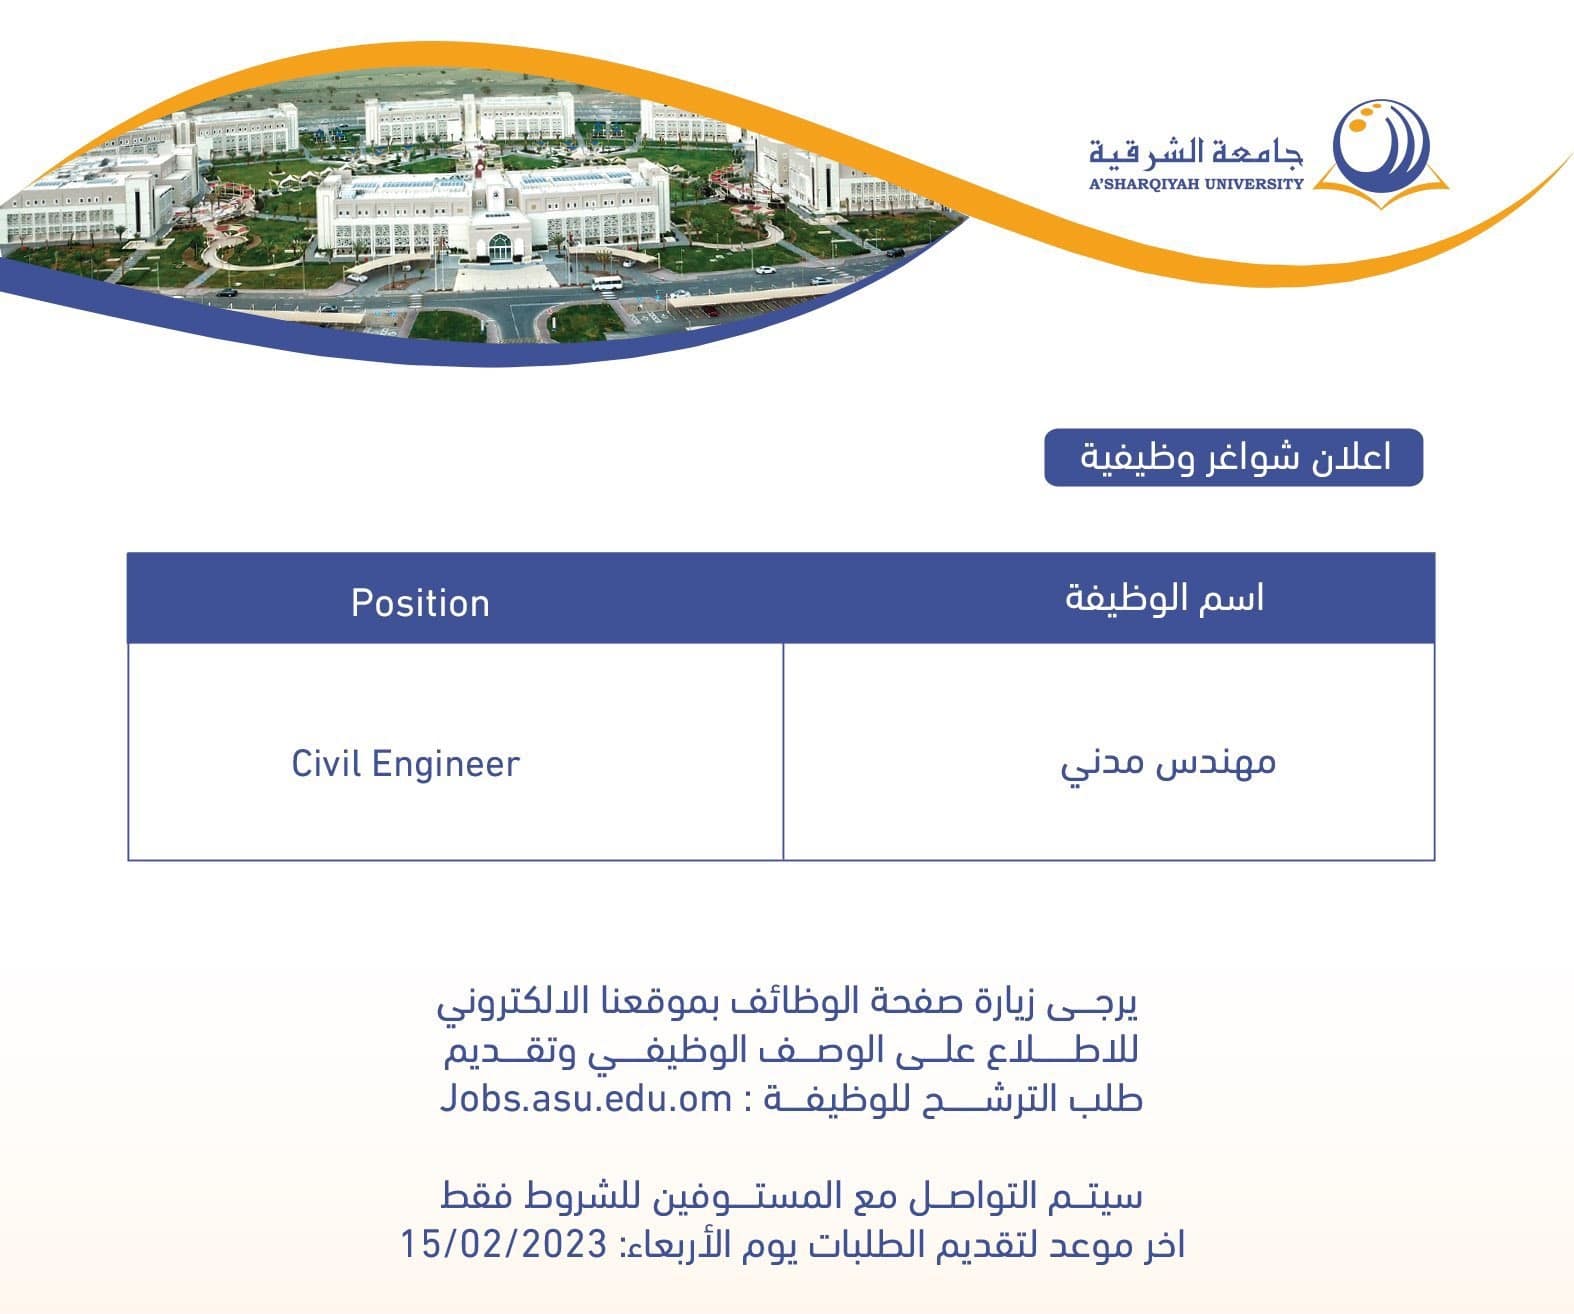 وظائف شاغرة لدي جامعة الشرقية 2023 ( A'Sharqiyah University ) برواتب ومزايا عالية